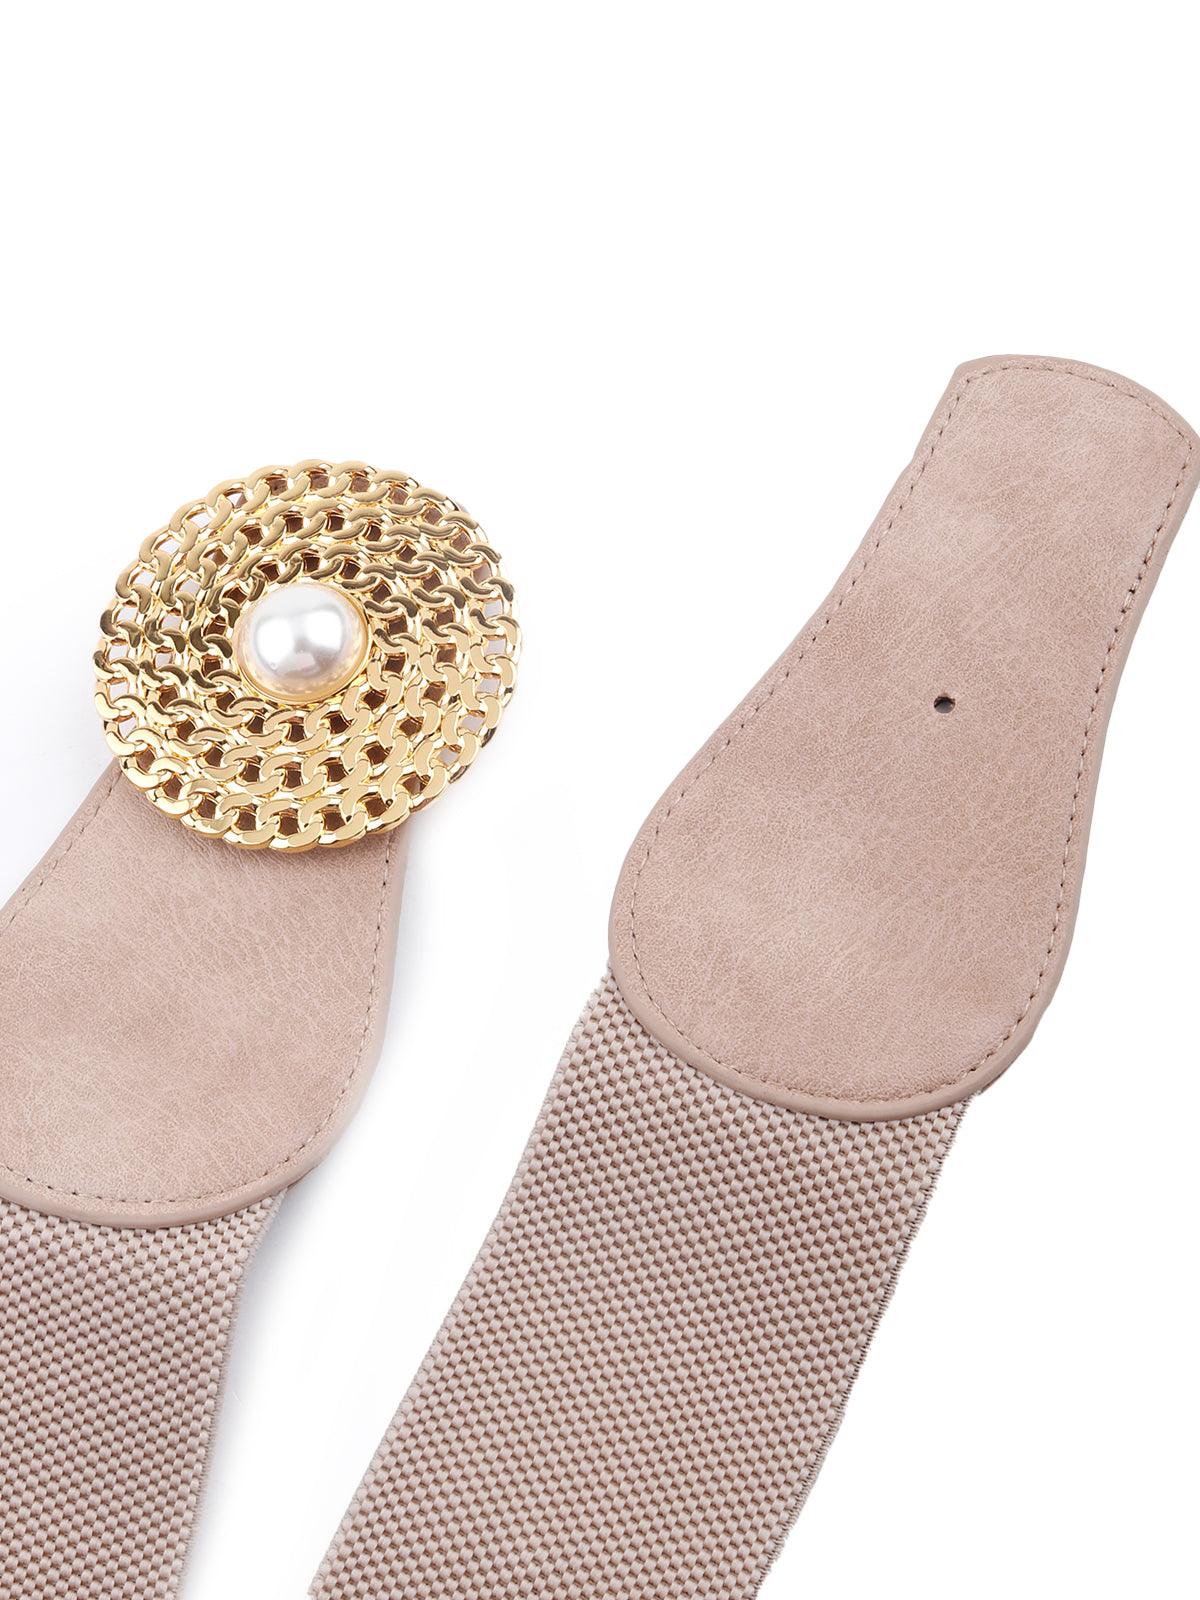 Beige elastic embellished belt - Odette